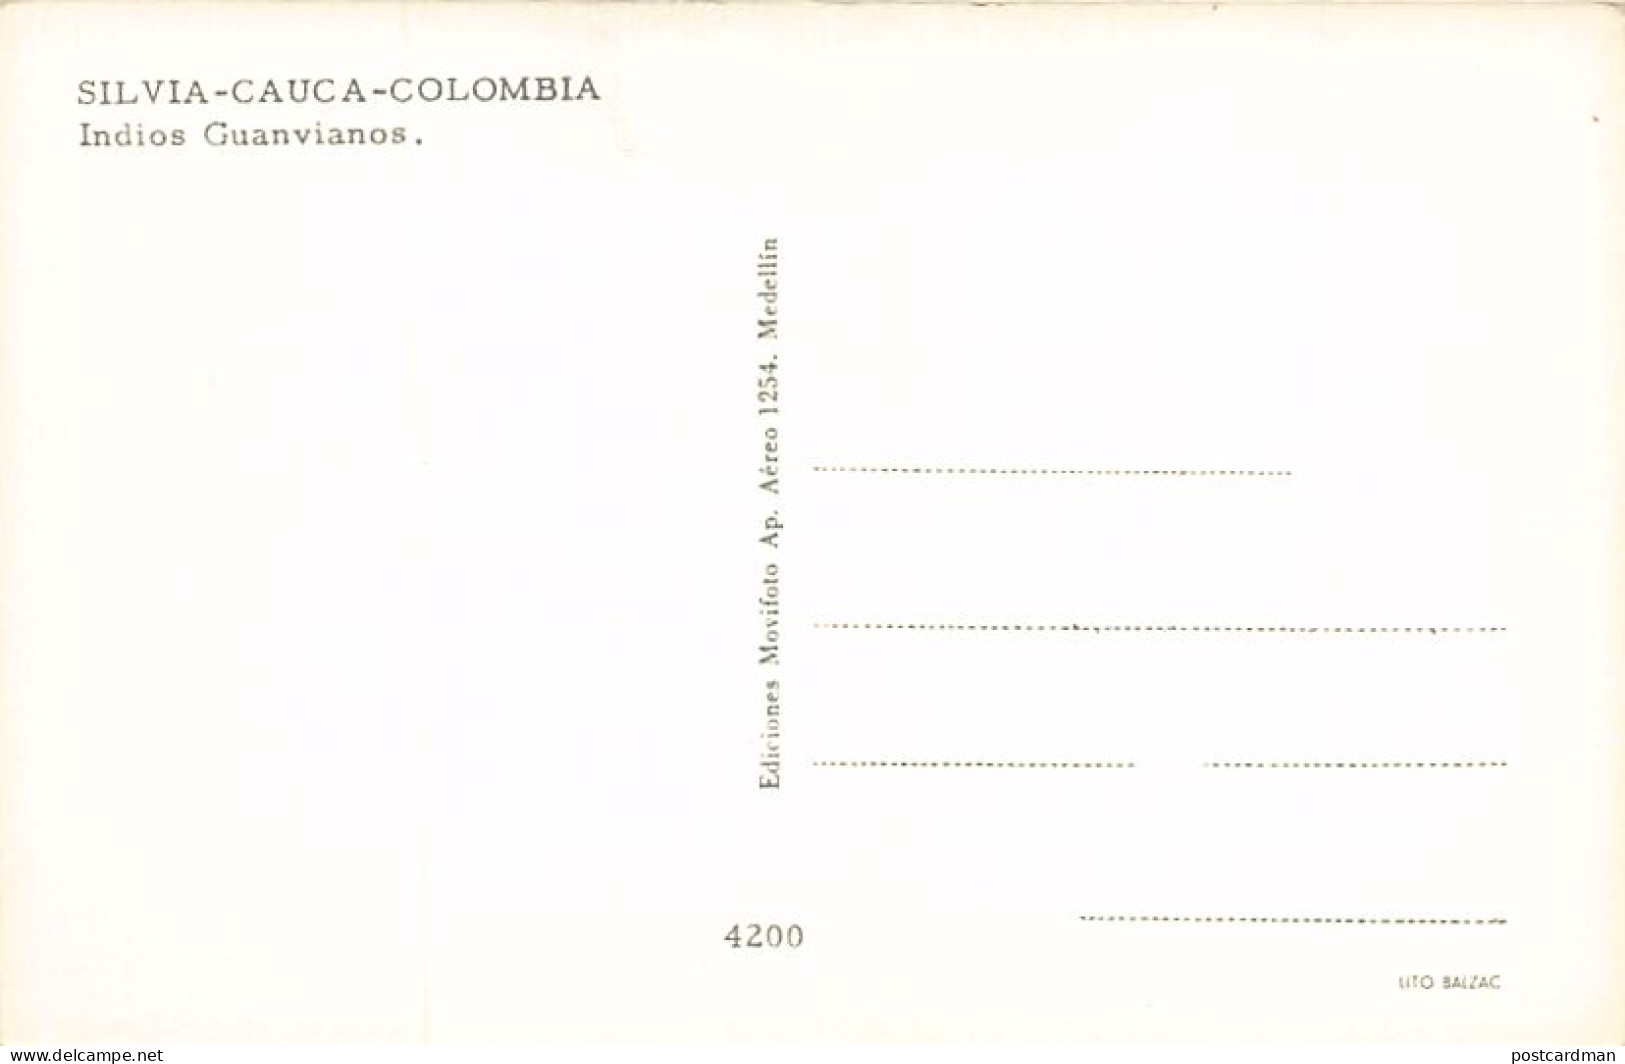 Colombia - SILVIA (Cauca) - Indios Guanvianos - Ed. Movifoto 4200 - Colombia